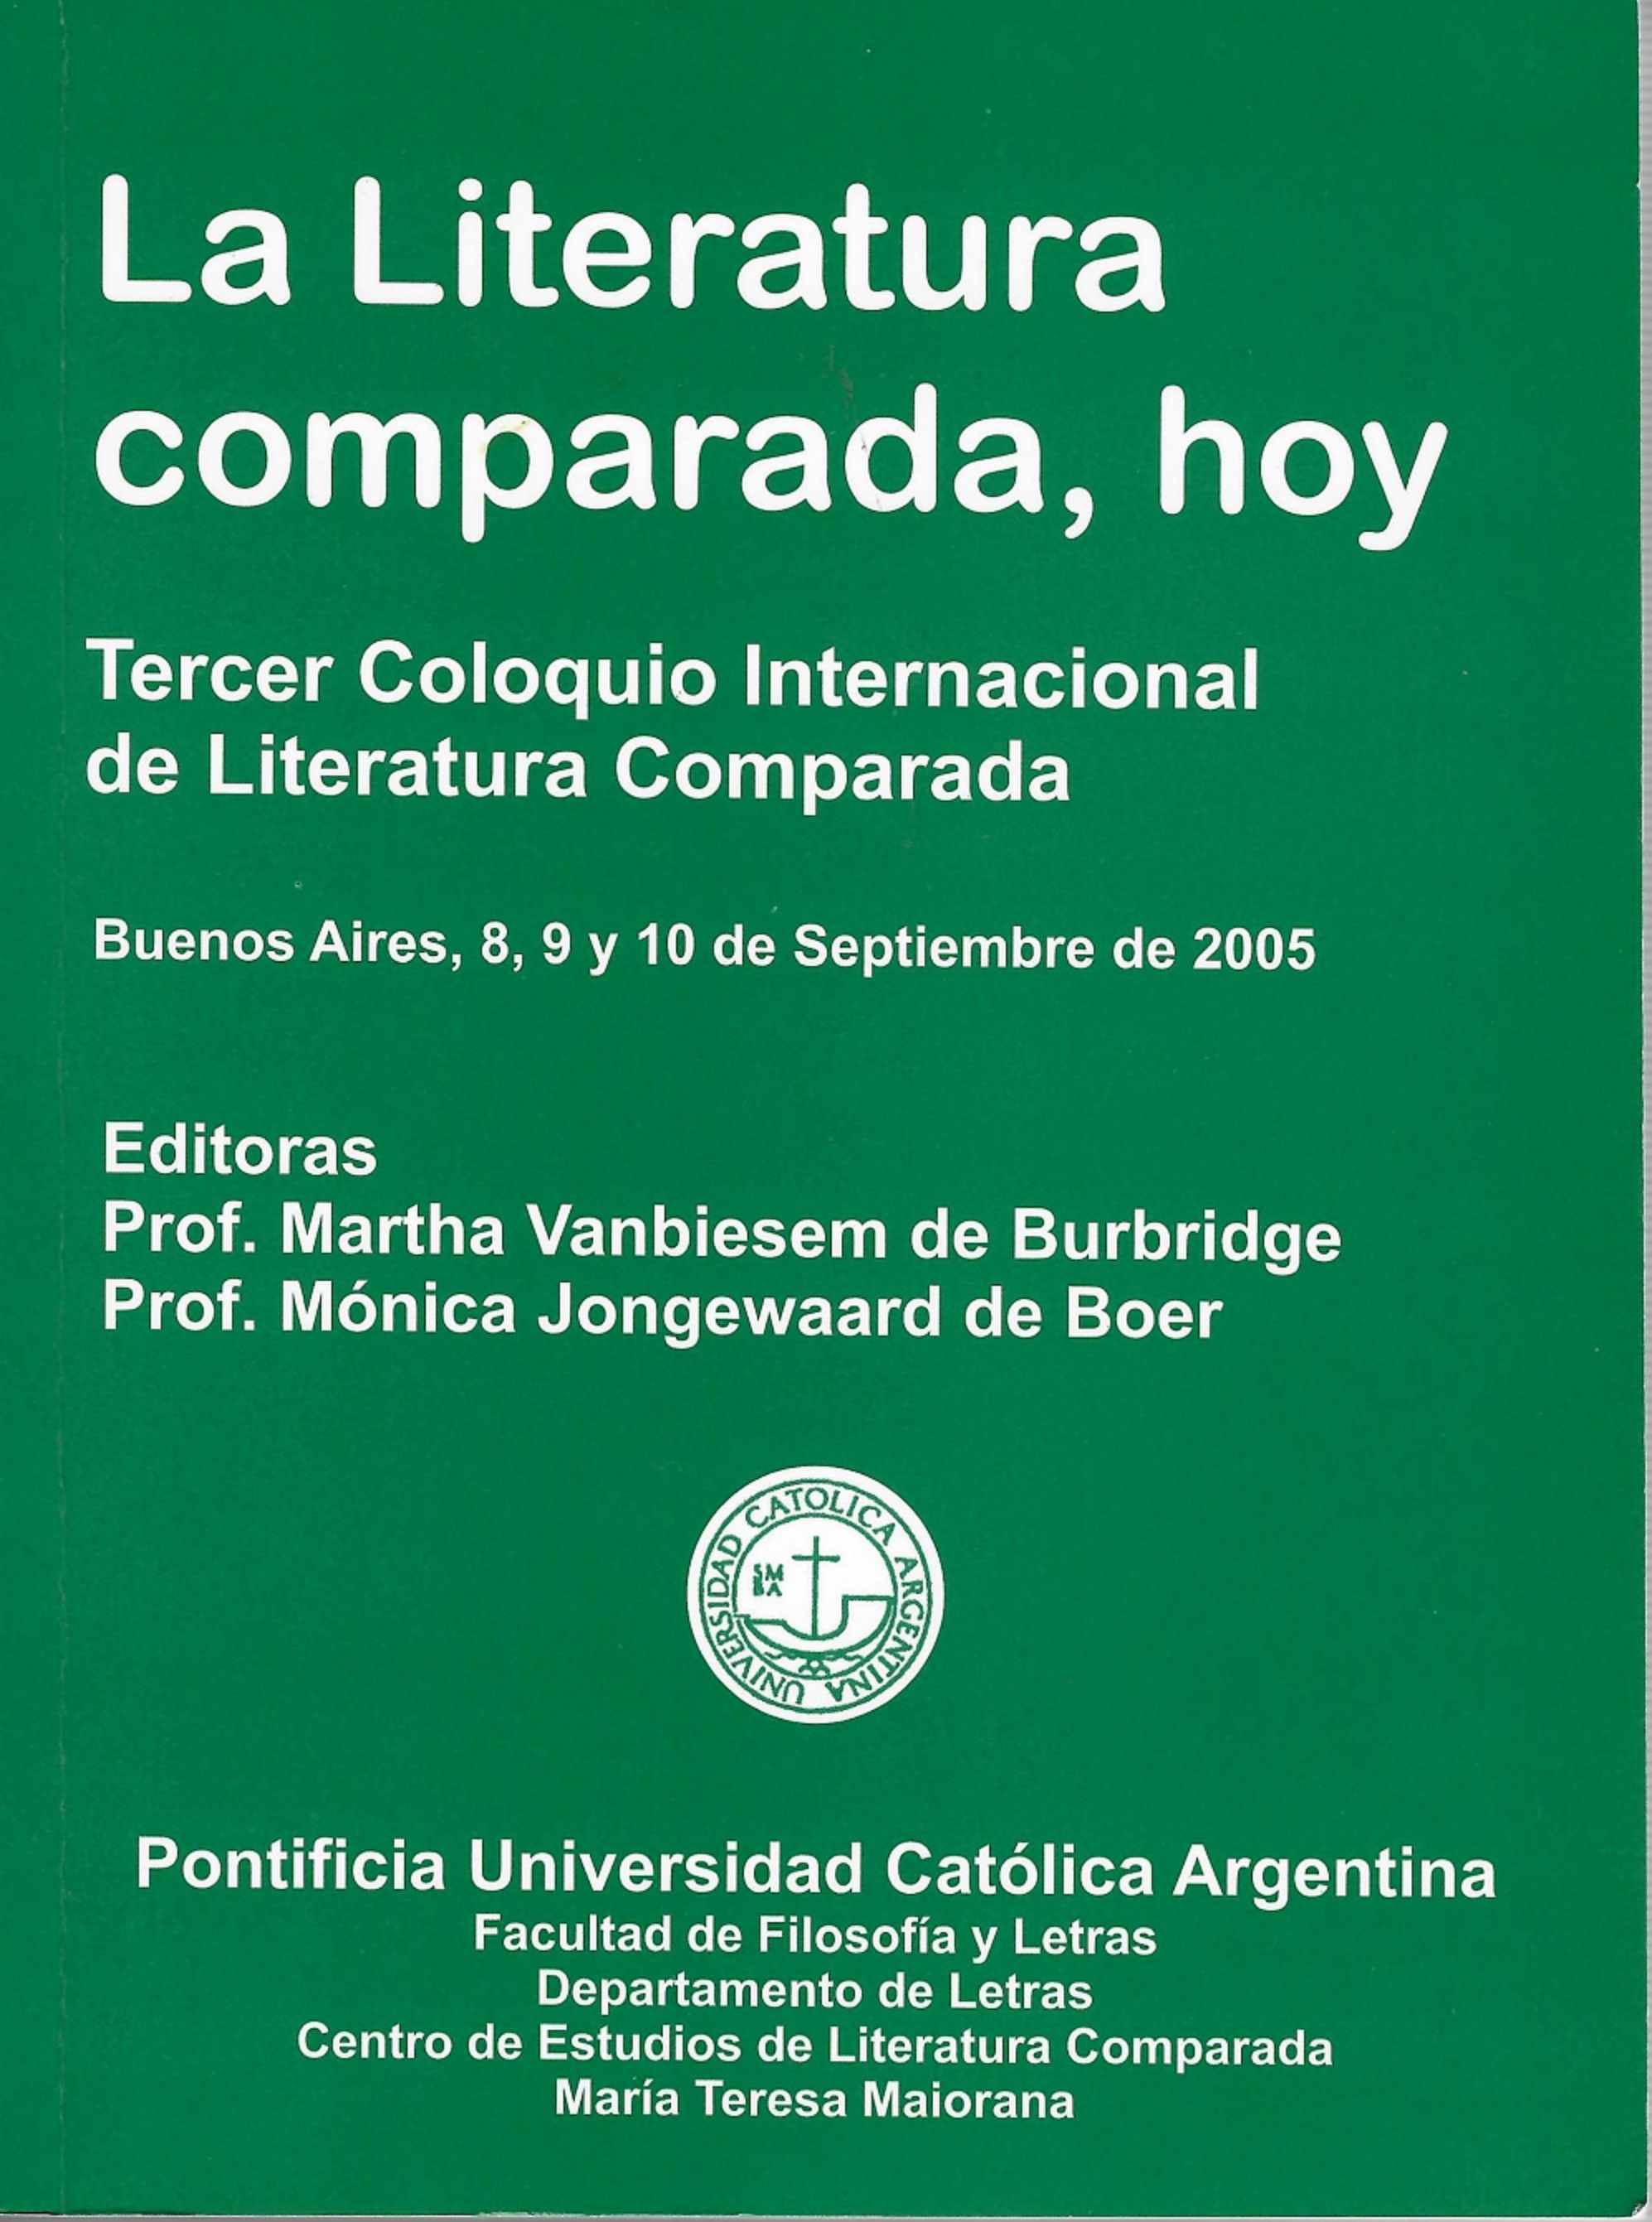 Imagen de portada del libro La Literatura comparada, hoy